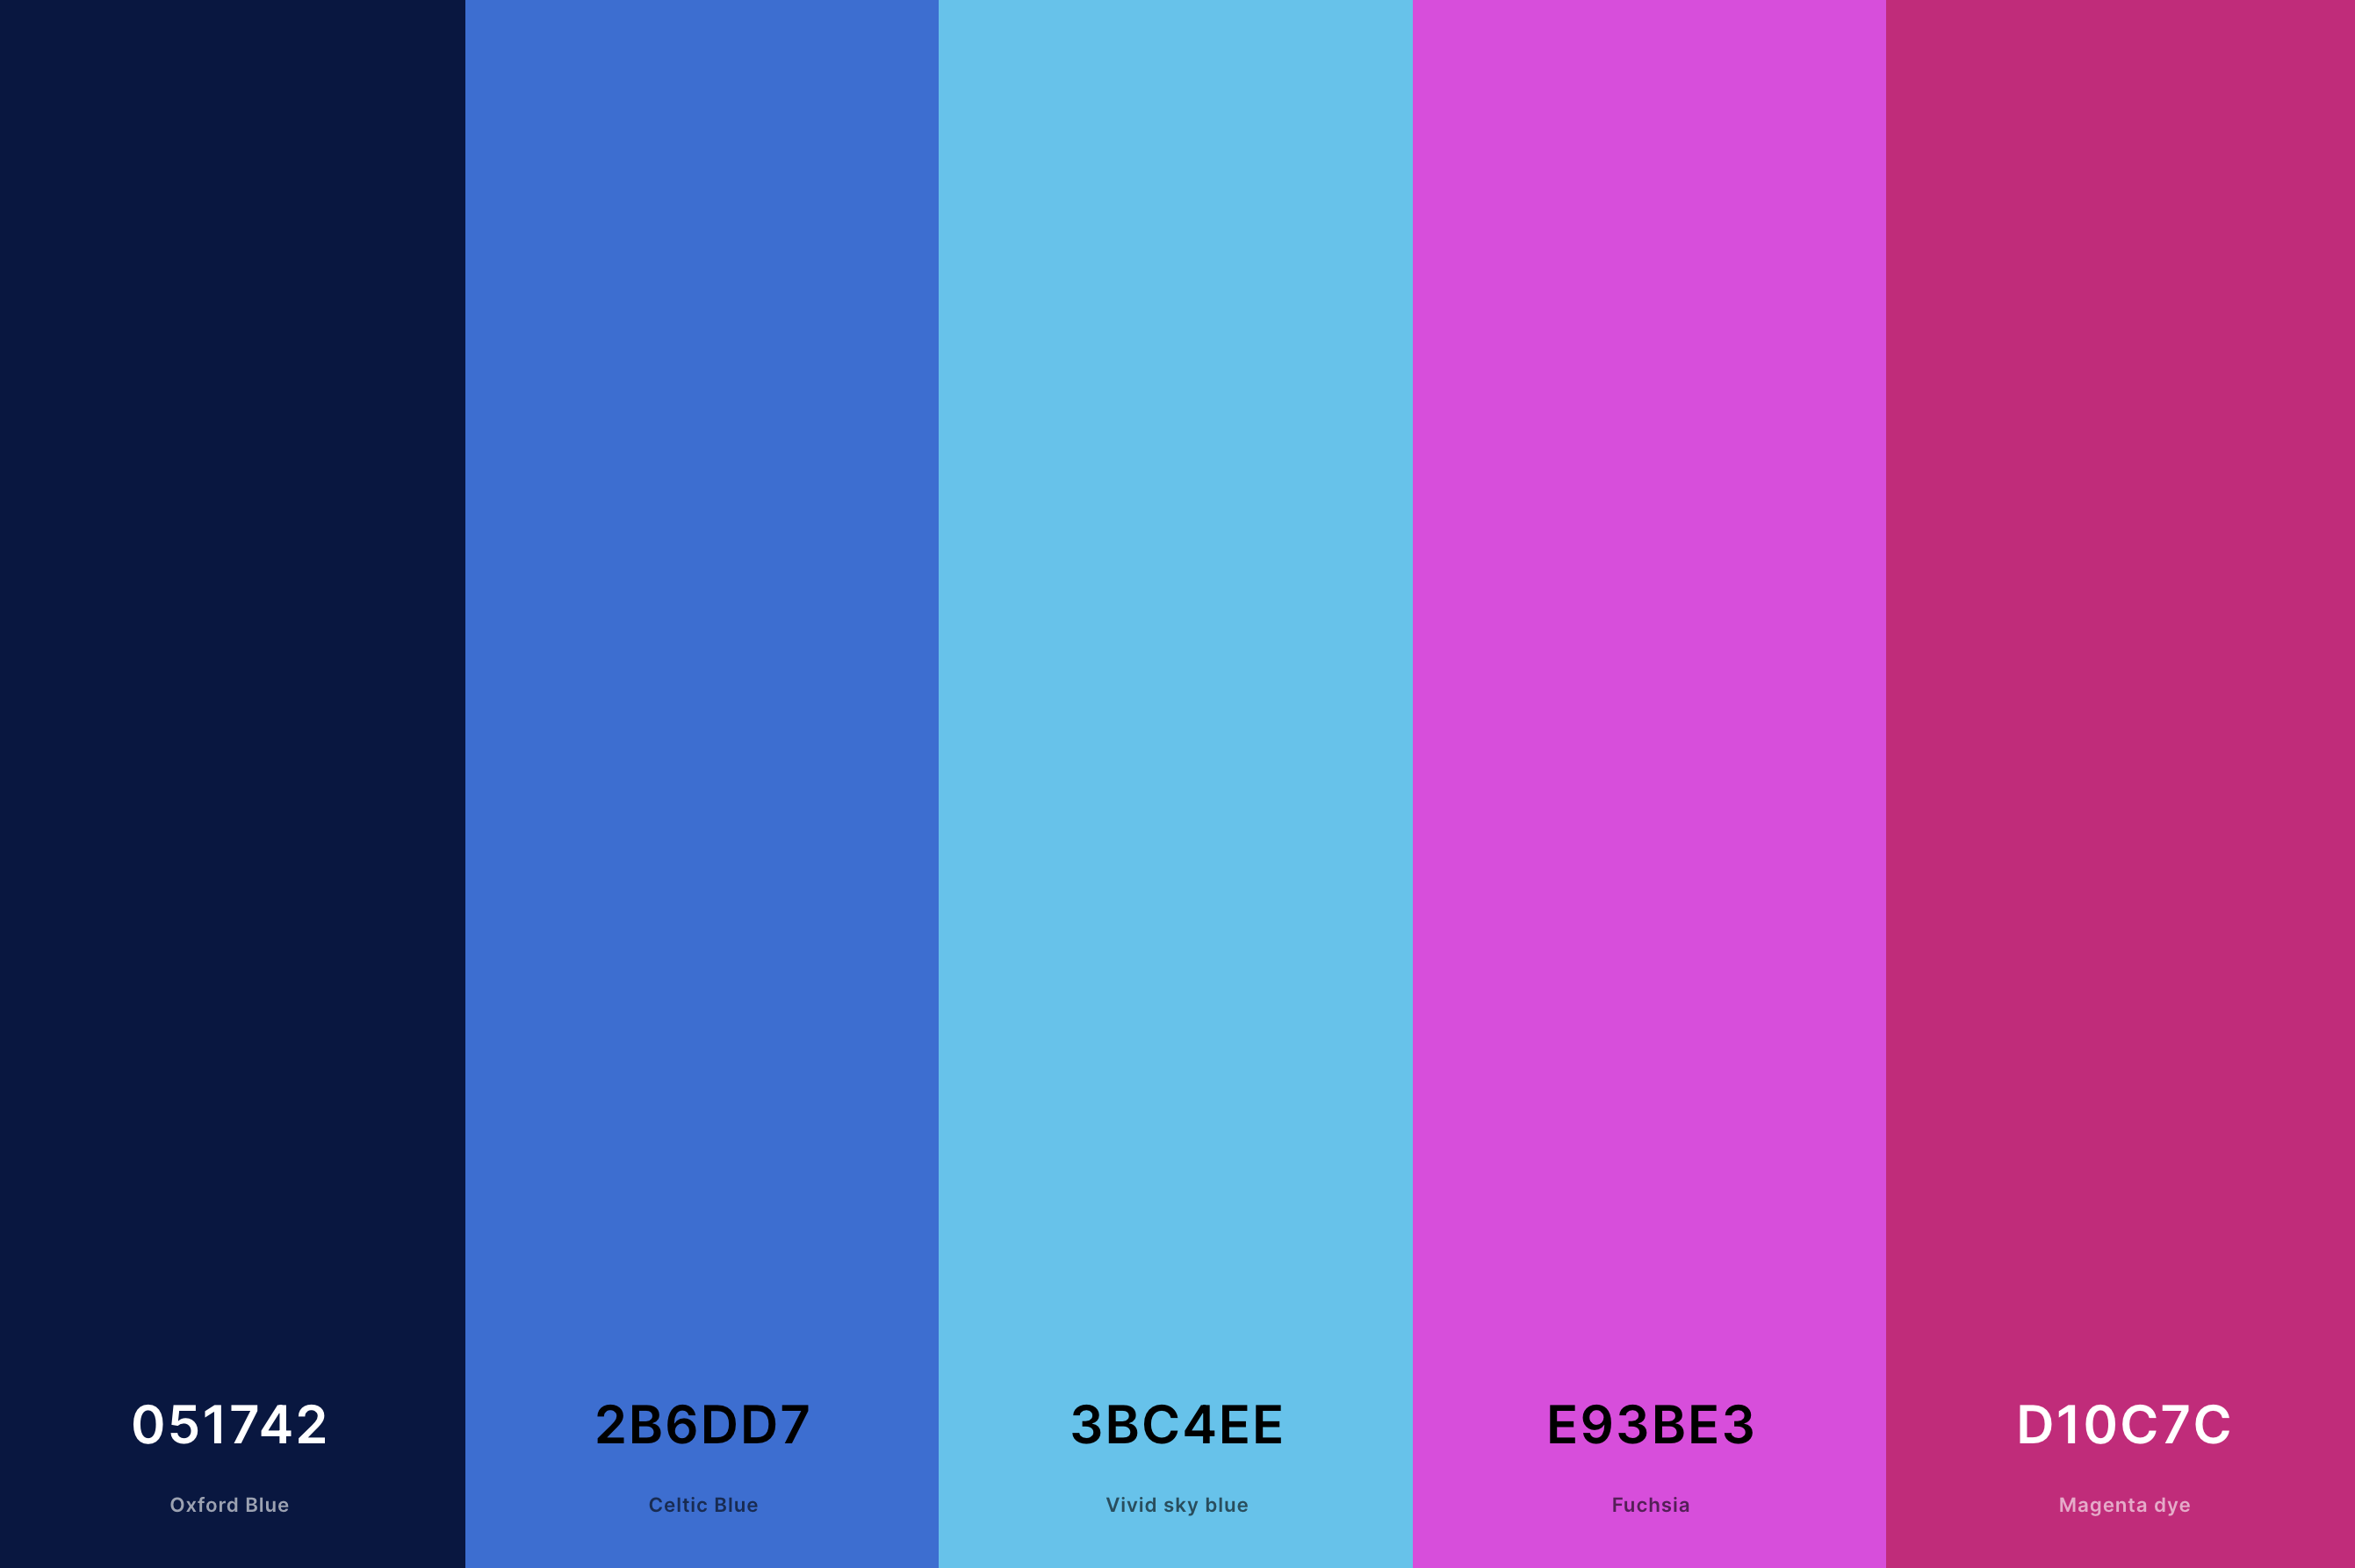 17. Neon City Color Palette Color Palette with Oxford Blue (Hex #051742) + Celtic Blue (Hex #2B6DD7) + Vivid Sky Blue (Hex #3BC4EE) + Fuchsia (Hex #E93BE3) + Magenta Dye (Hex #D10C7C) Color Palette with Hex Codes